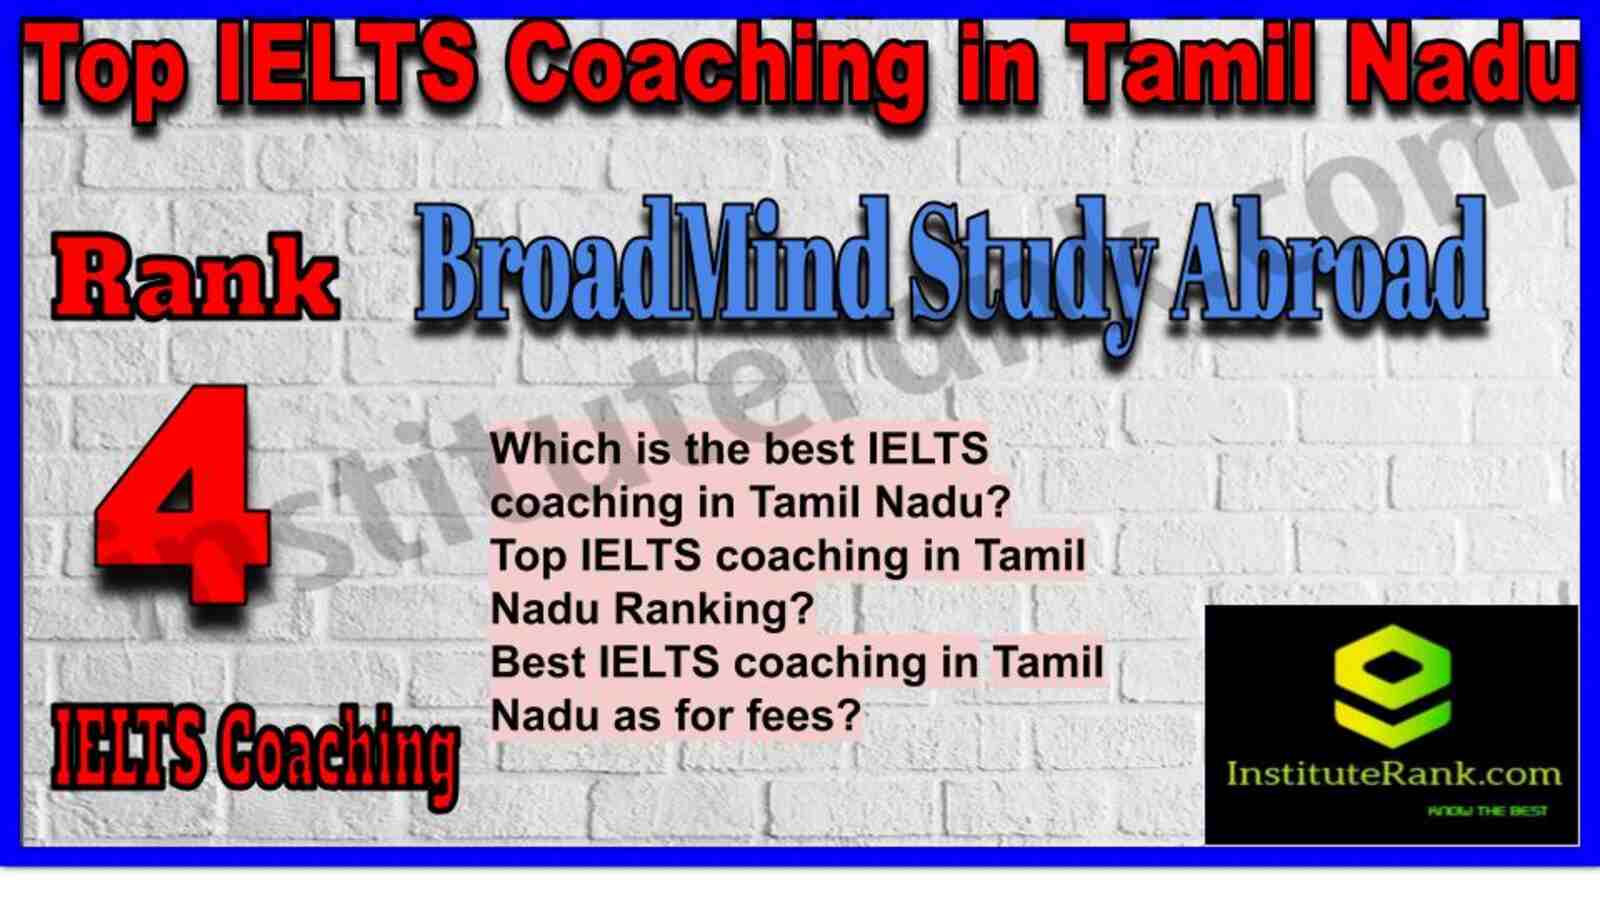 Rank 4. BroadMind Study Abroad | Best IELTS Coaching in Tamil Nadu